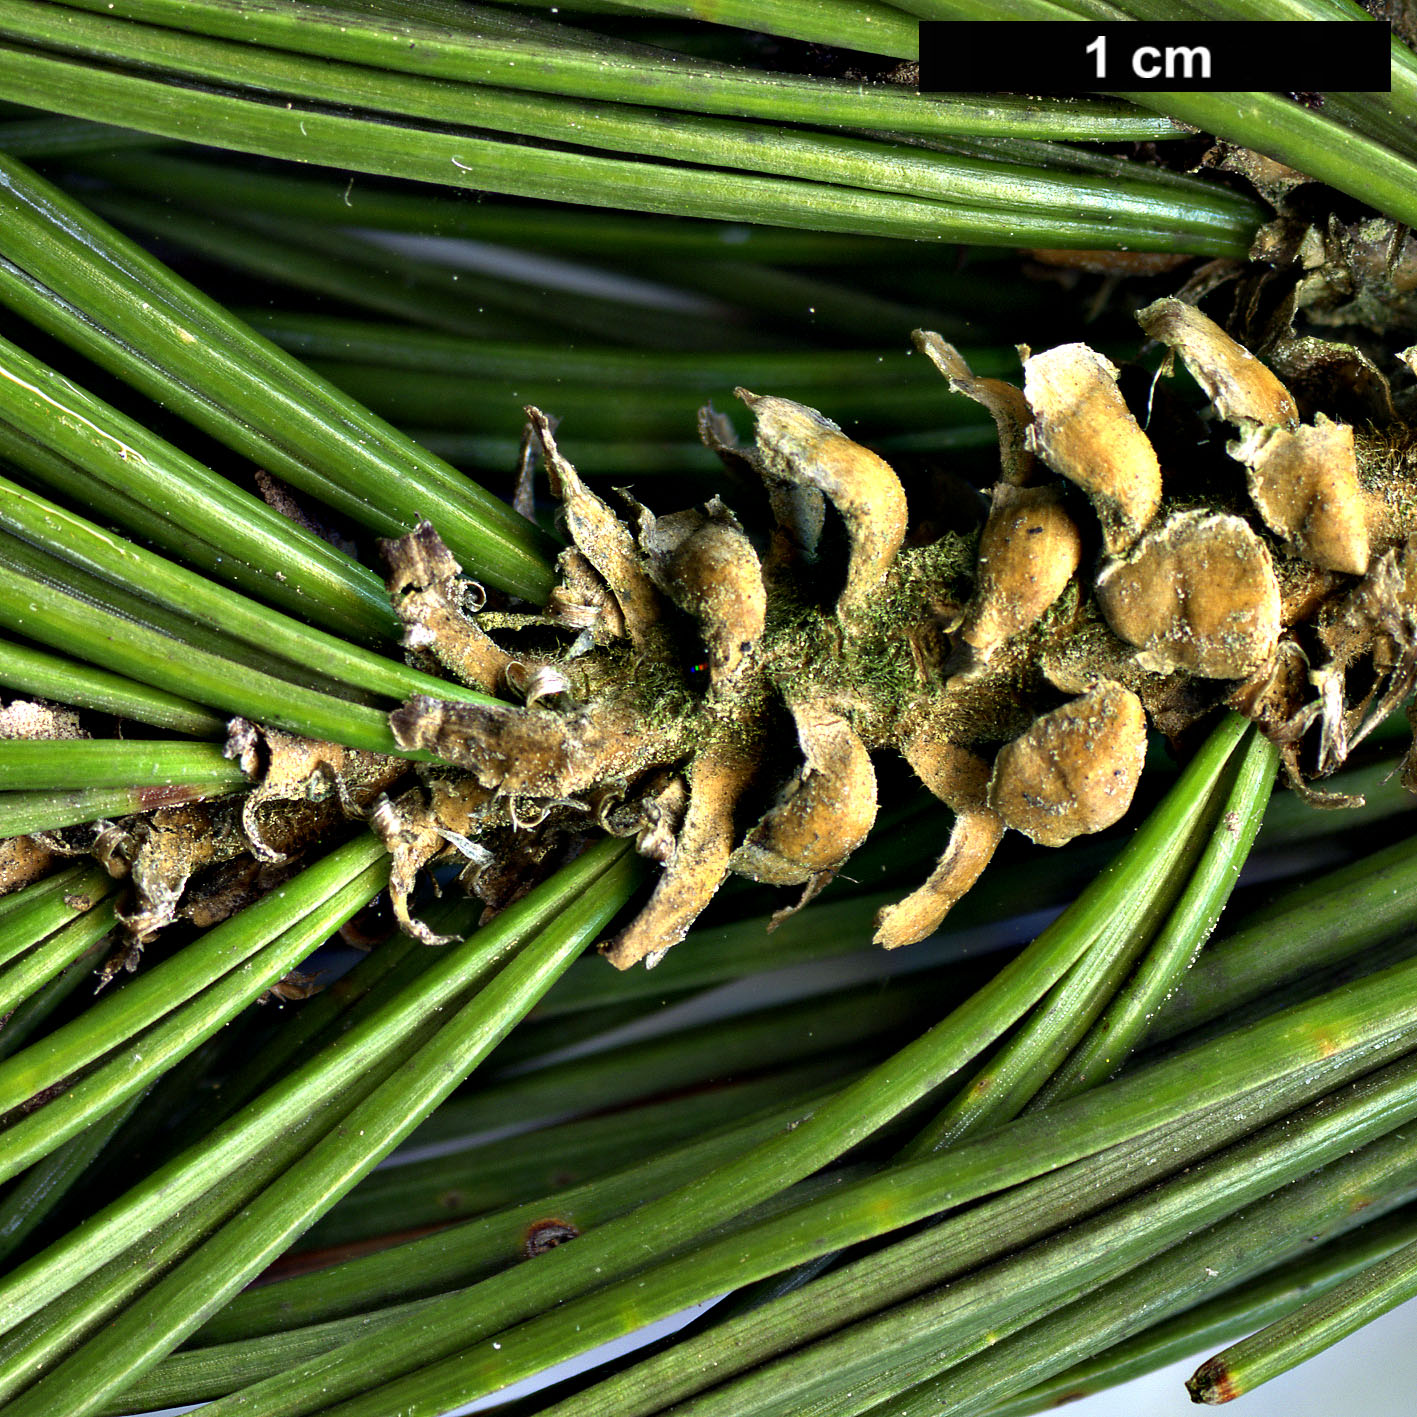 High resolution image: Family: Pinaceae - Genus: Pinus - Taxon: longaeva